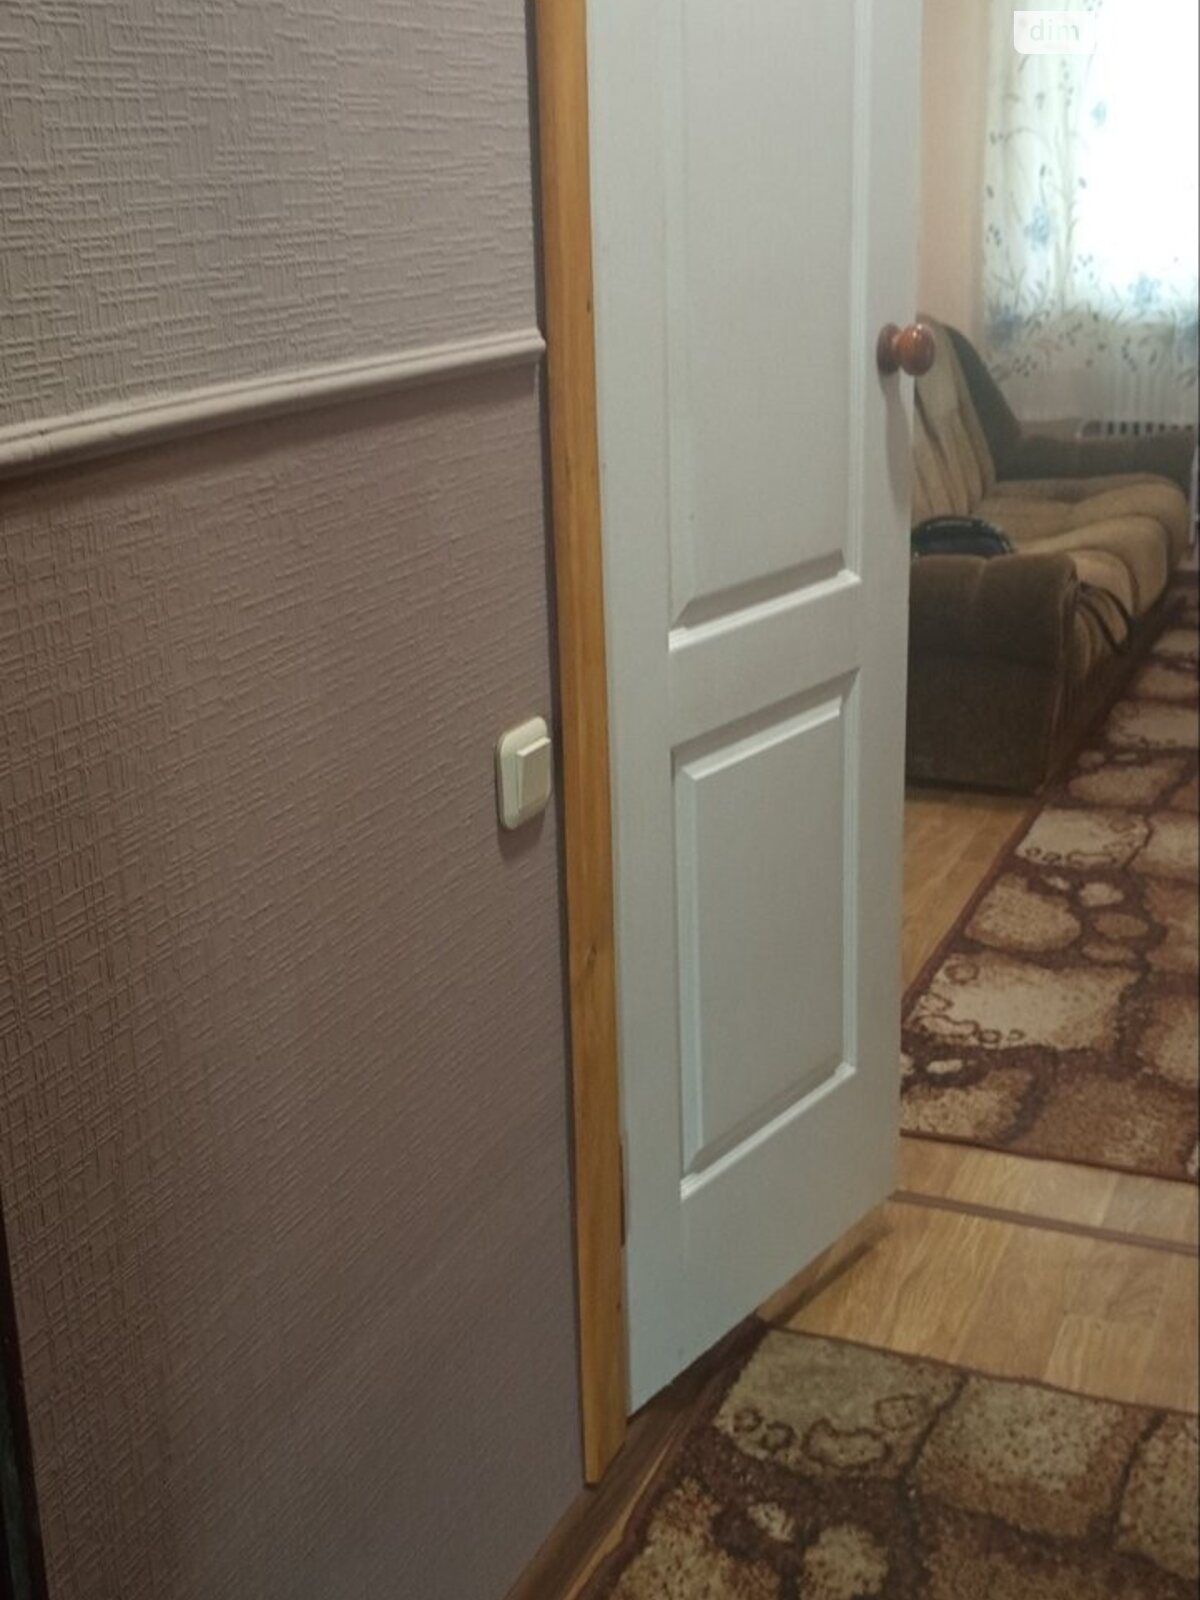 Кімната в Харкові на бул. Фронтовиків 3 в районі Павлове Поле на продаж фото 1